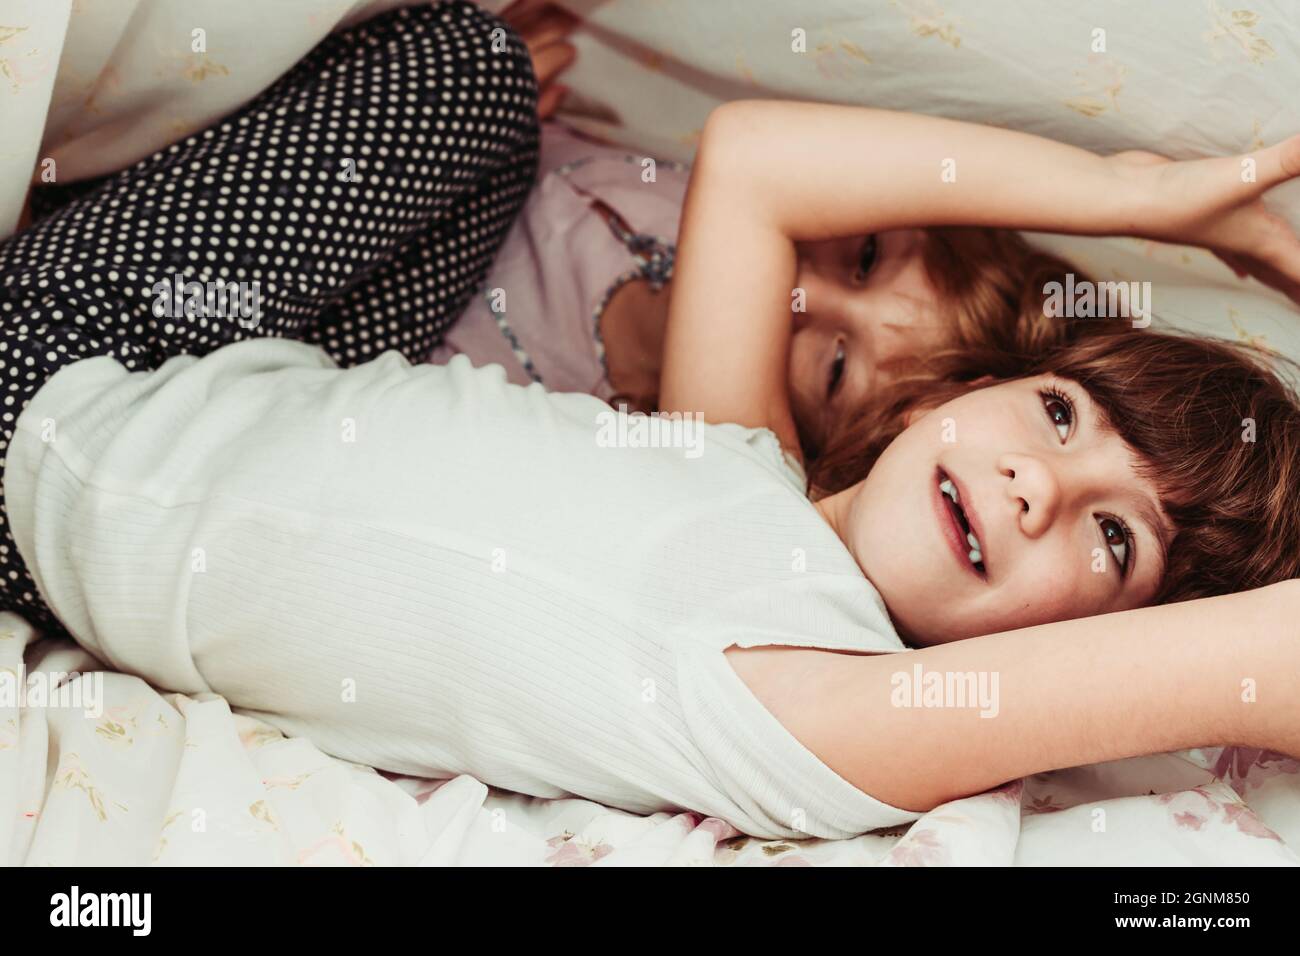 Nette kleine Mädchen, Schwestern, die morgens aufwachen. Kinder im Schlafanzug, schlafen, Mädchenzimmer Stockfoto